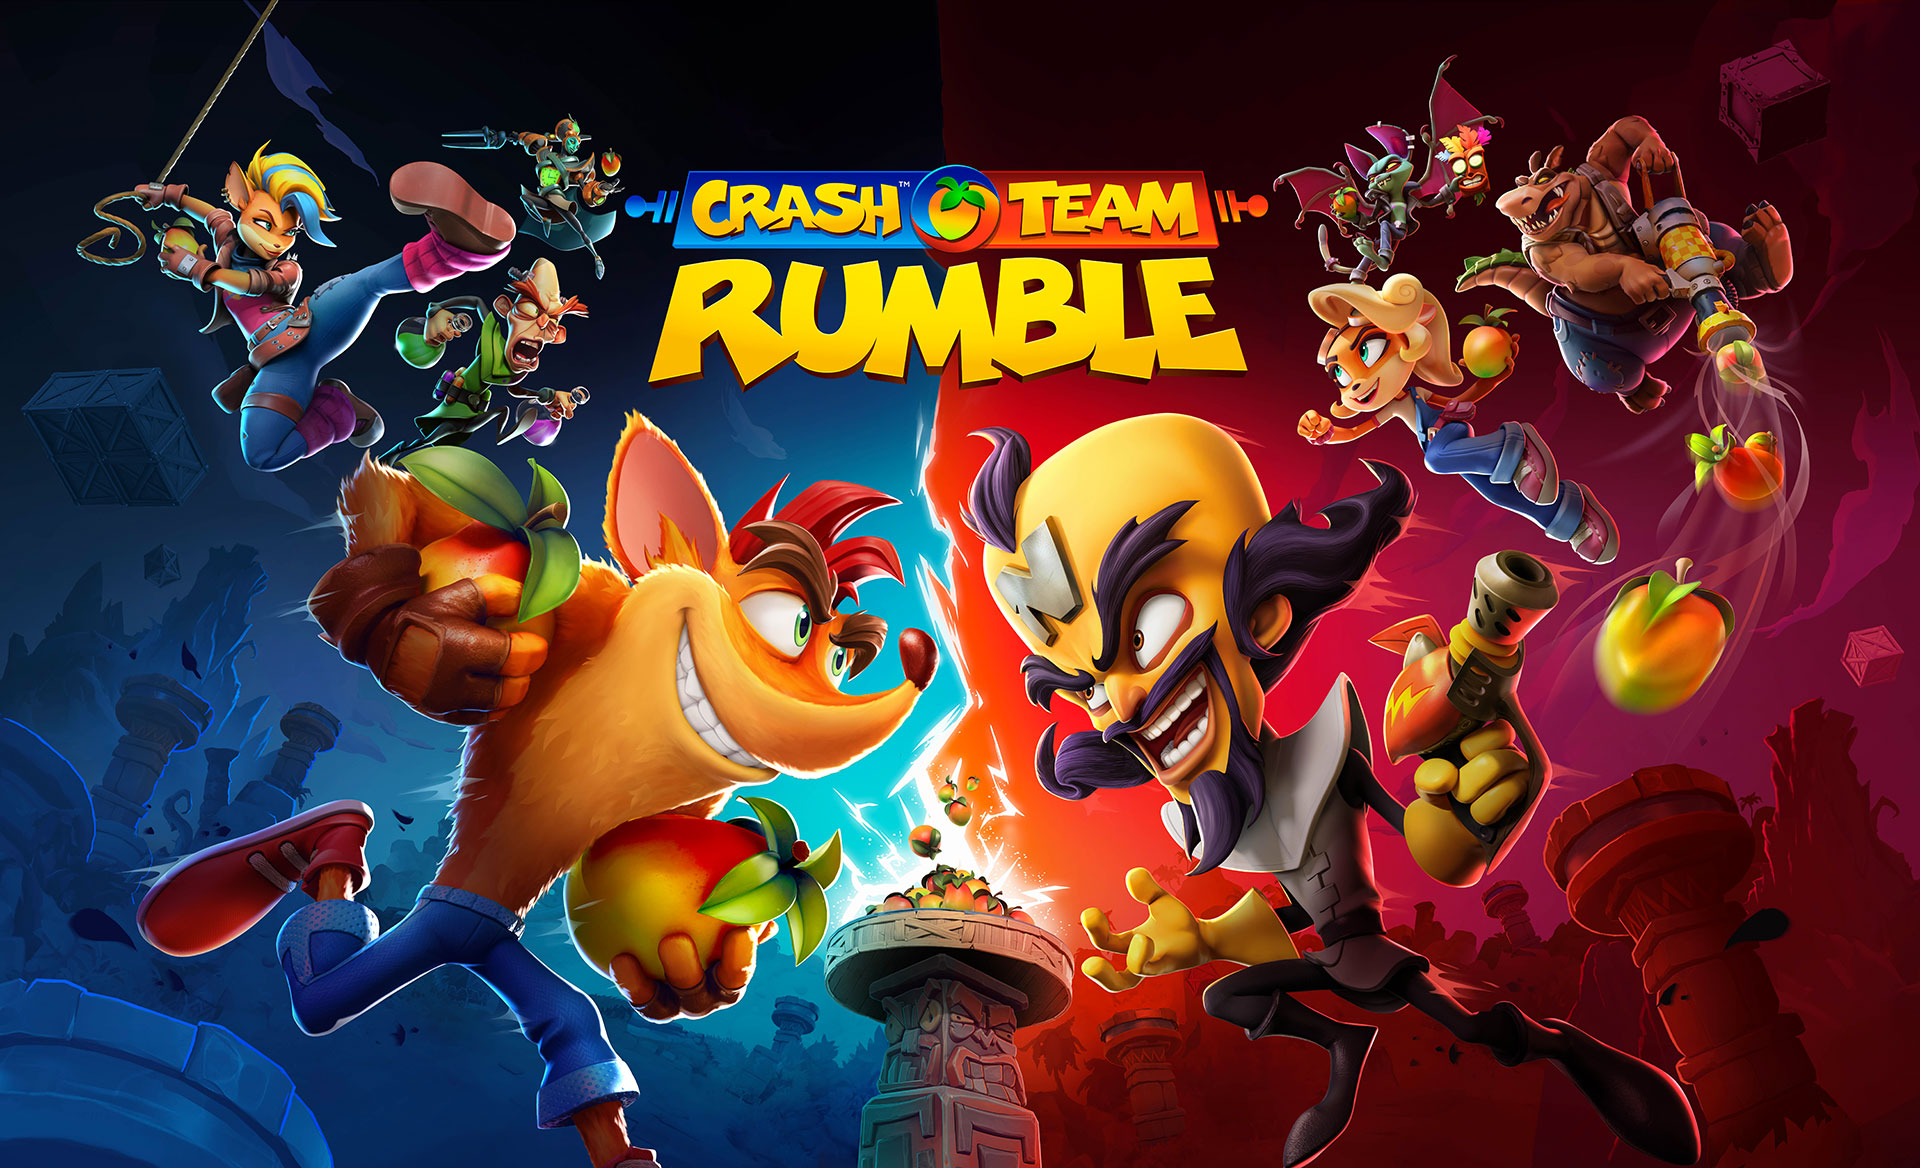 Producent Crash Team Rumble opowiedział nam o nadchodzących nowościach w grze: nowym trybie (który jest już dostępny), nowej mapie oraz szeregu poprawek i ulepszeń